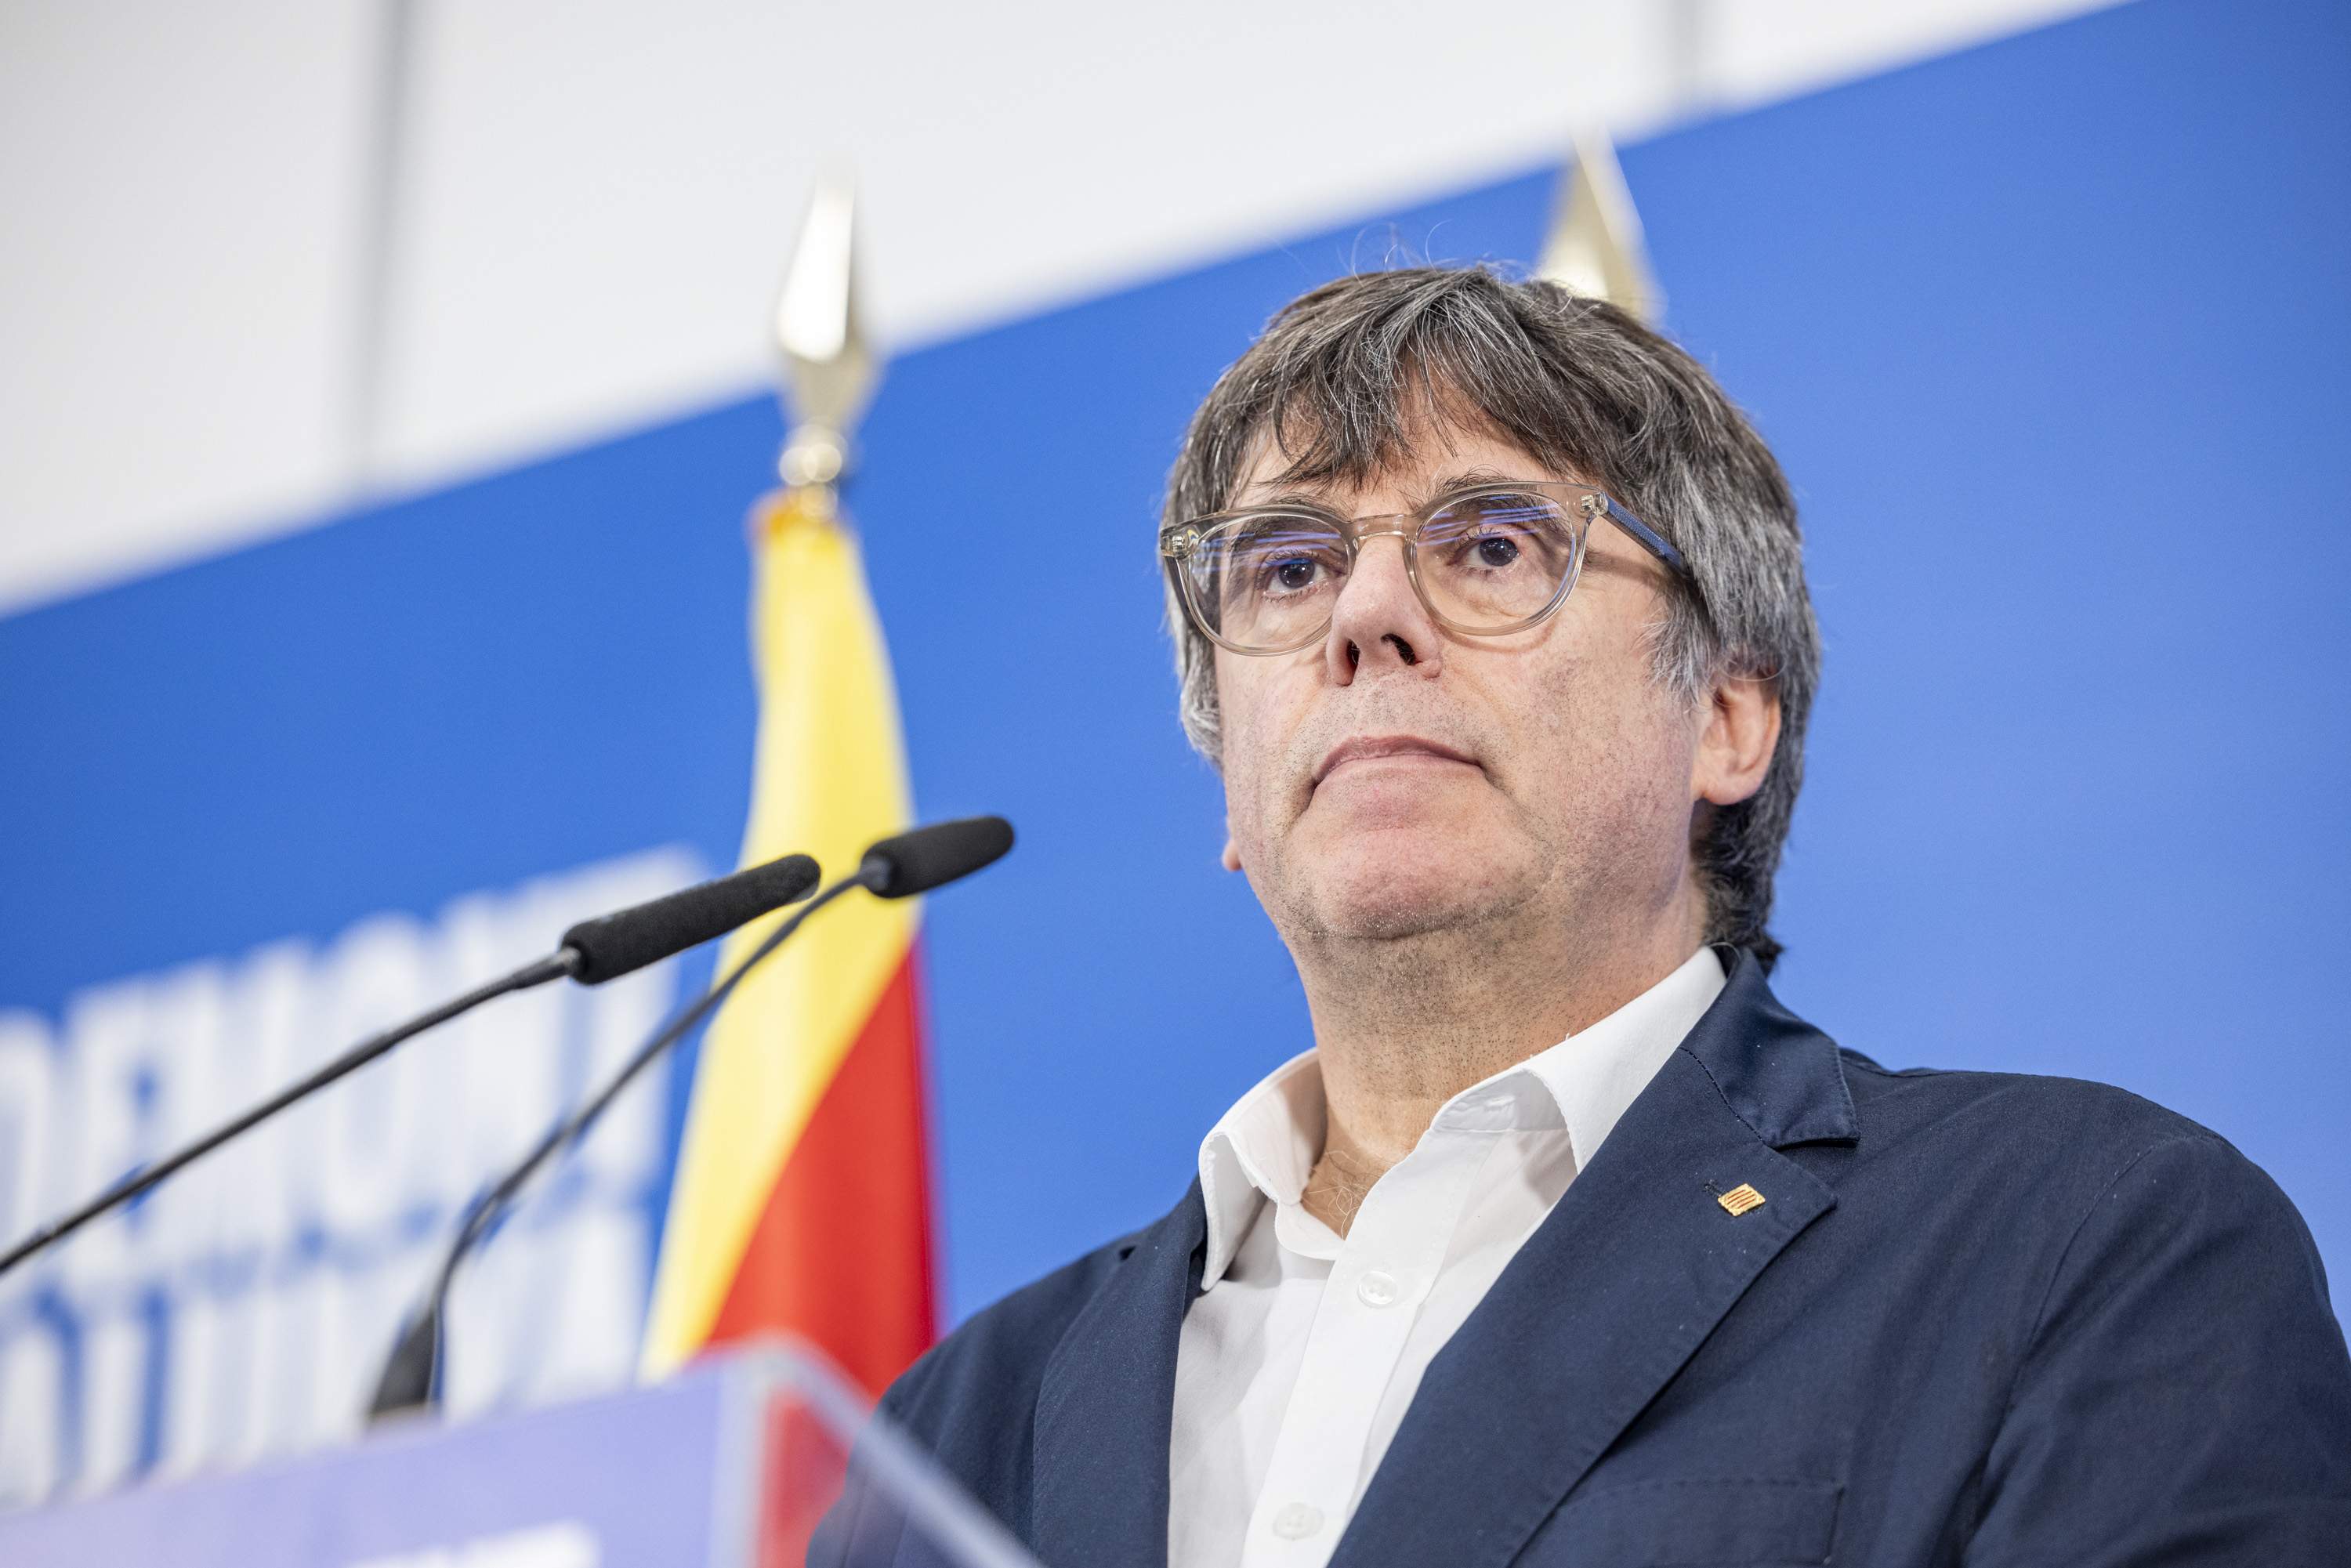 Boye confirma el regreso de Carles Puigdemont pese a la orden de detención del Supremo